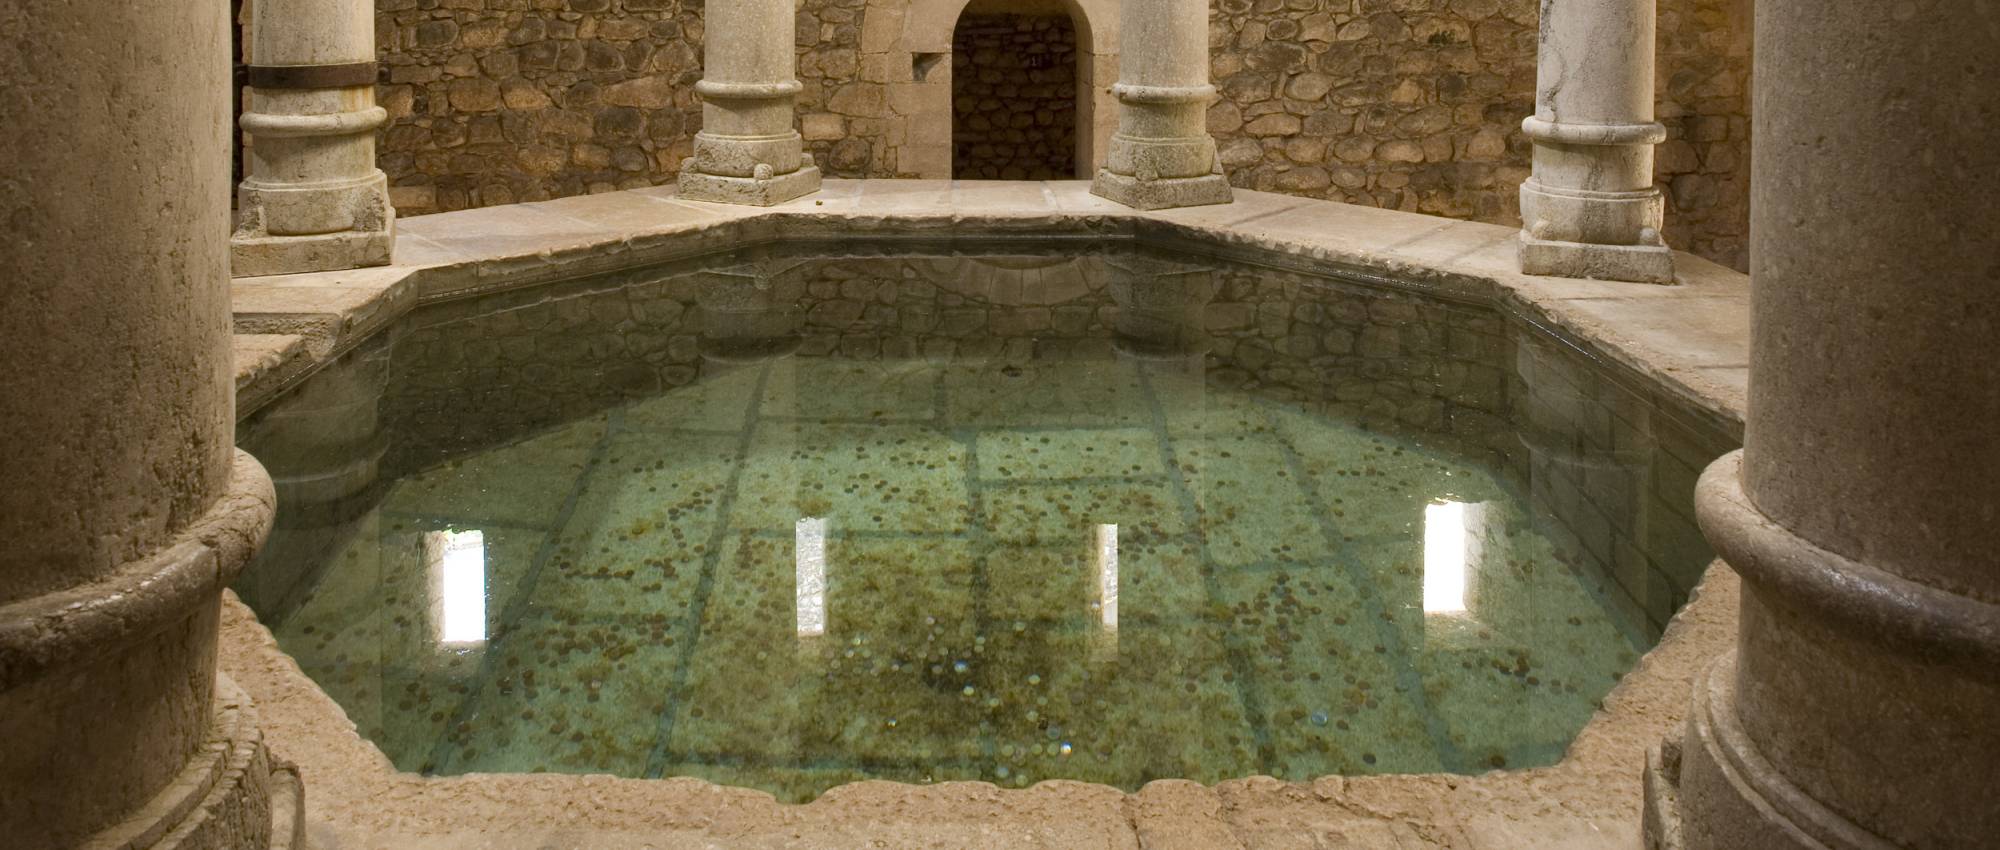 The Arab baths. Bob Masters / DGPC